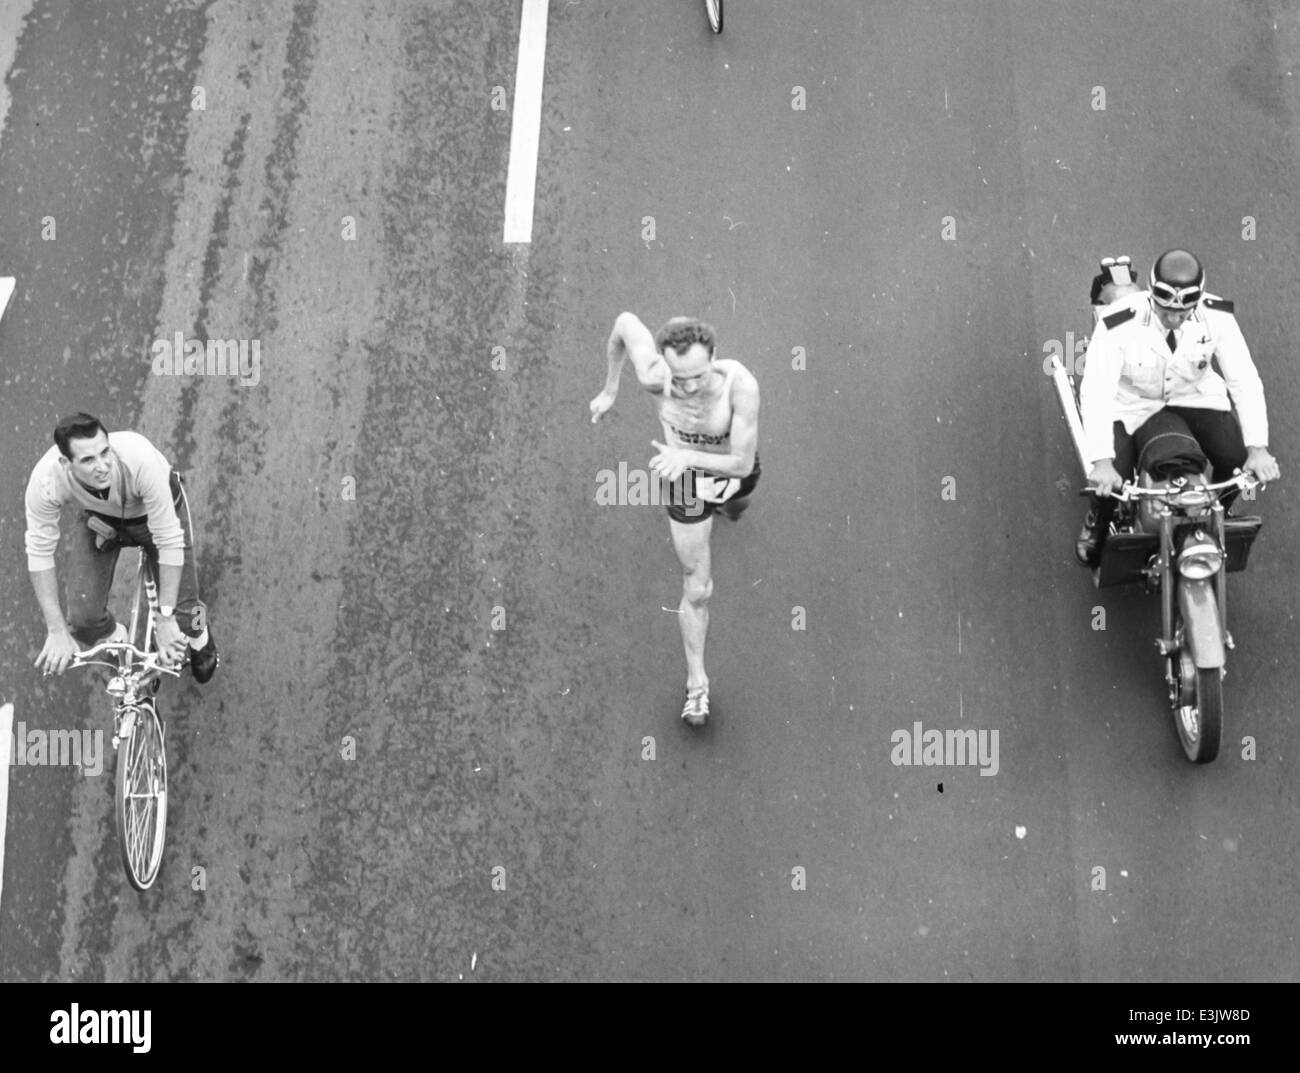 abdon pamich,roma-castelganolfo marathon,1961 Stock Photo